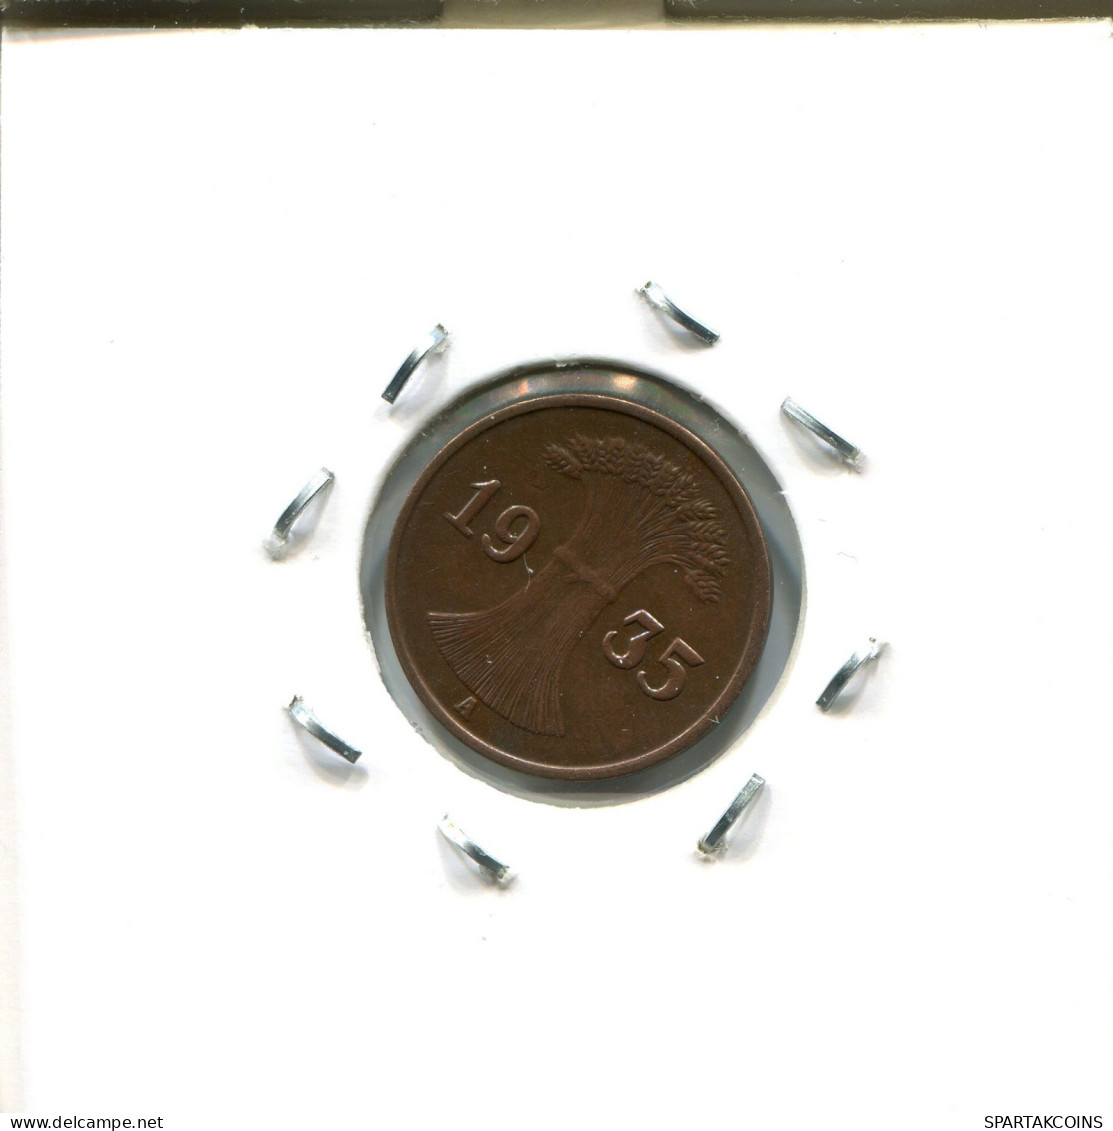 1 RENTENPFENNIG 1935 A GERMANY Coin #DA462.2.U.A - 1 Reichspfennig